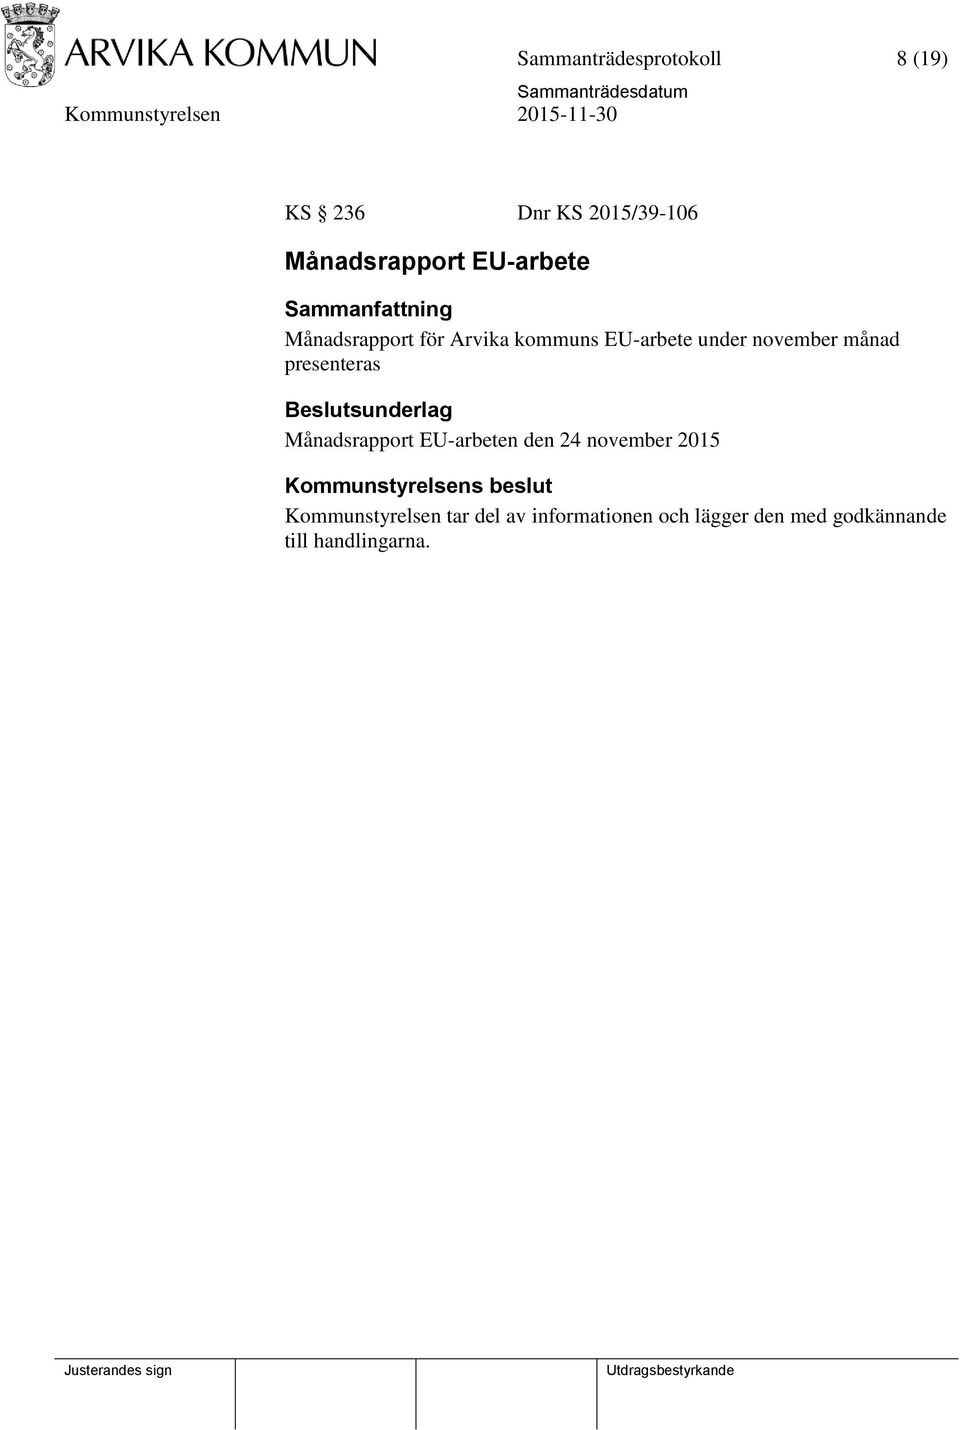 Månadsrapport EU-arbeten den 24 november 2015 Kommunstyrelsens beslut